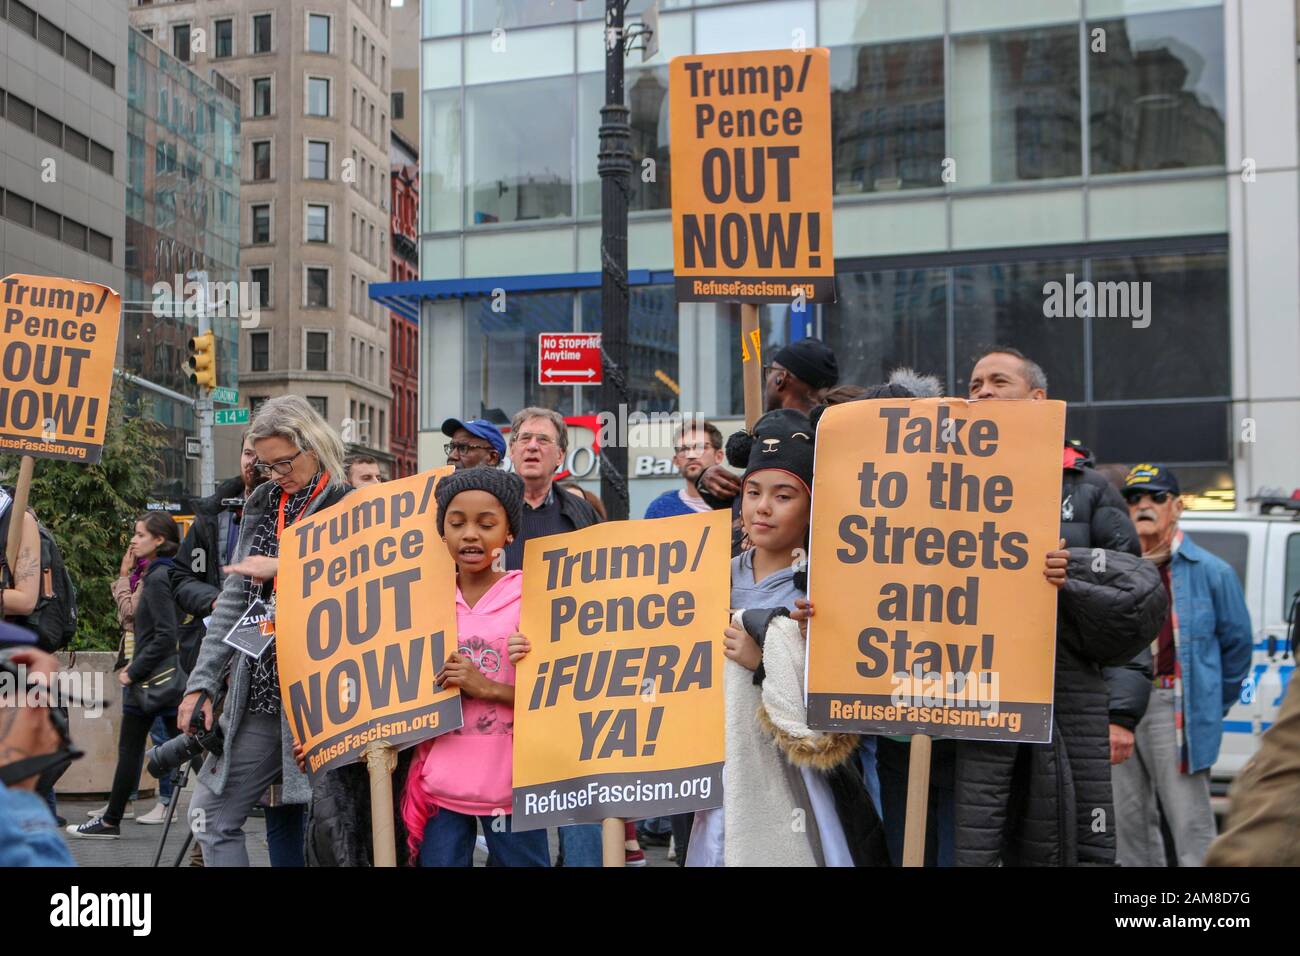 New York, États-Unis. 11 janvier 2020. On voit des manifestants tenir des signes anti-Trump lors du rassemblement « Trump/Pence #OUTNOW! » à Union Square à New York le 11 janvier 2020. (Photo De Ryan Rahman/Pacific Press) Crédit: Pacific Press Agency/Alay Live News Banque D'Images